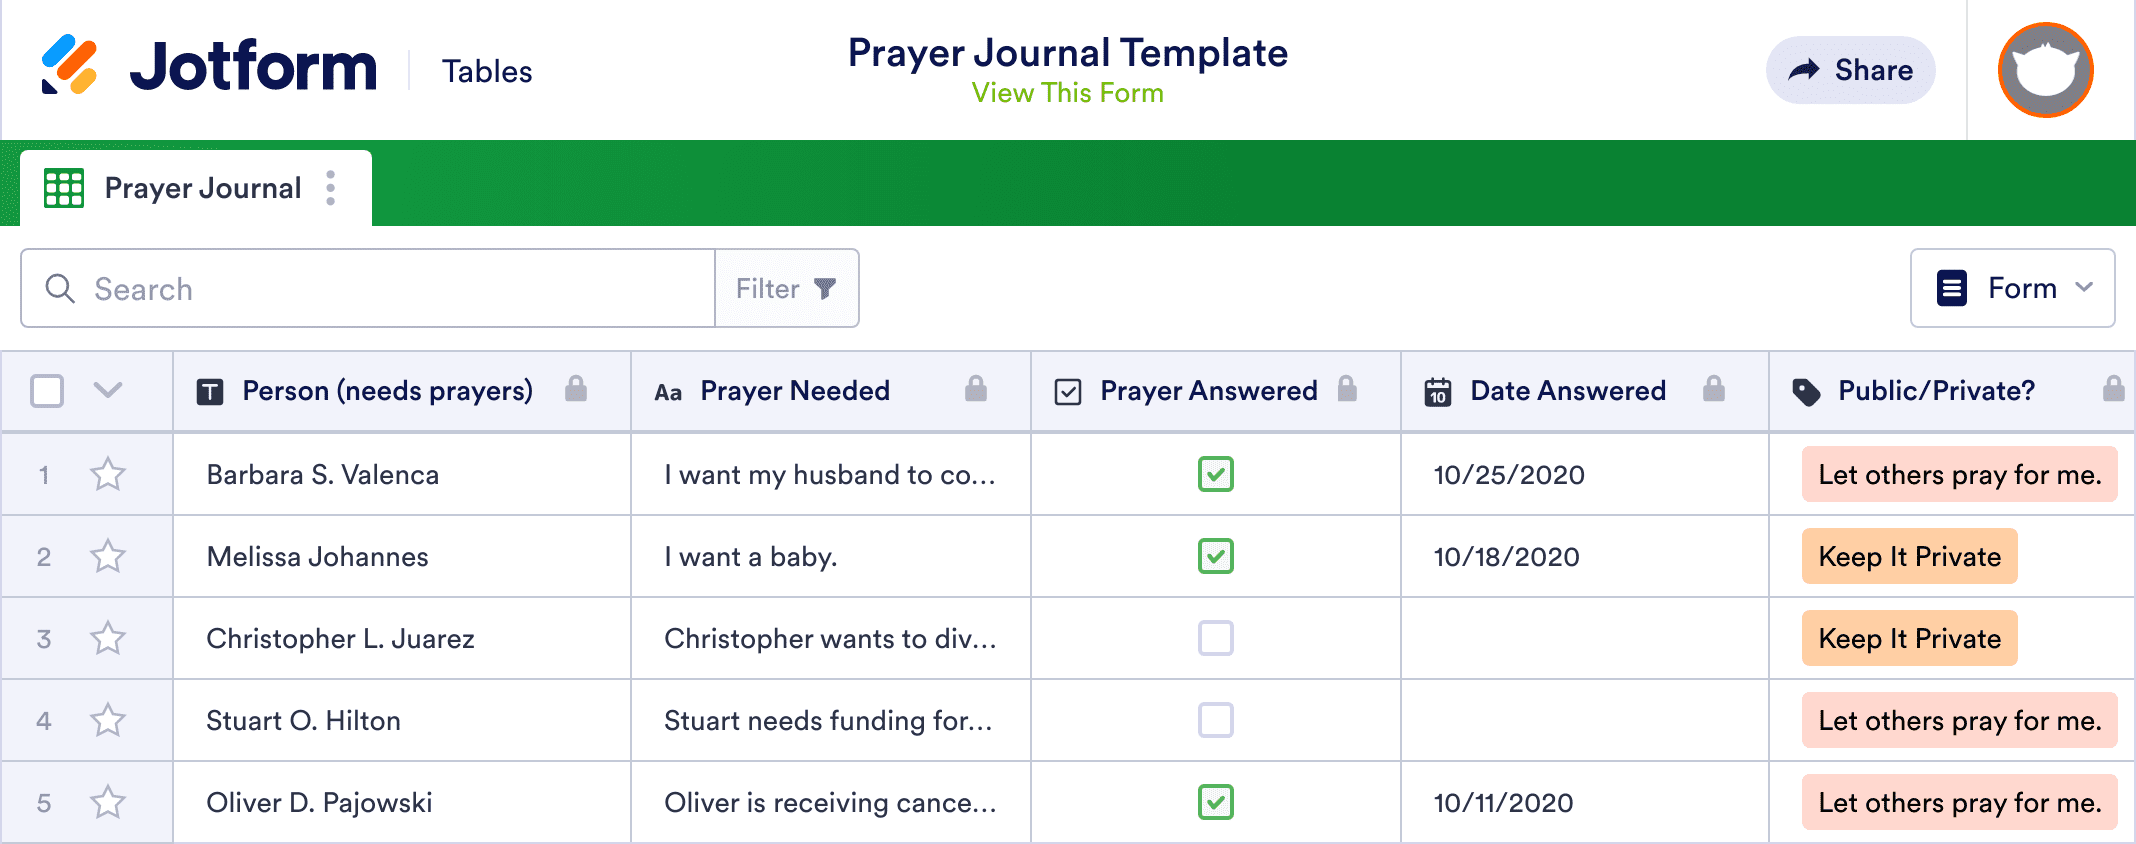 Prayer Journal Template | Jotform Tables